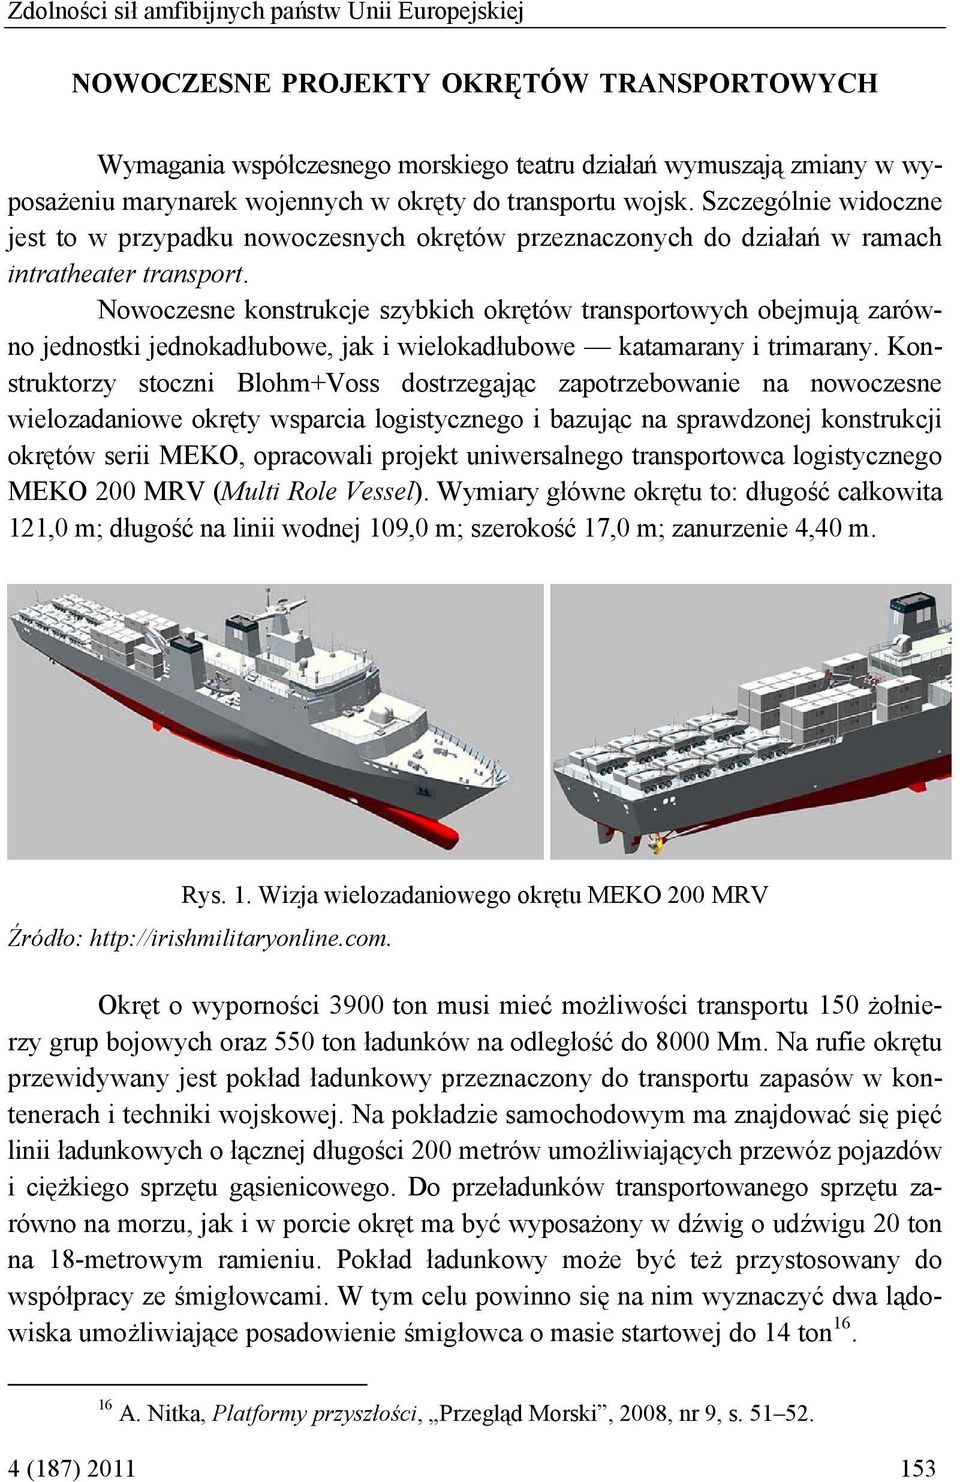 Nowoczesne konstrukcje szybkich okrętów transportowych obejmują zarówno jednostki jednokadłubowe, jak i wielokadłubowe katamarany i trimarany.